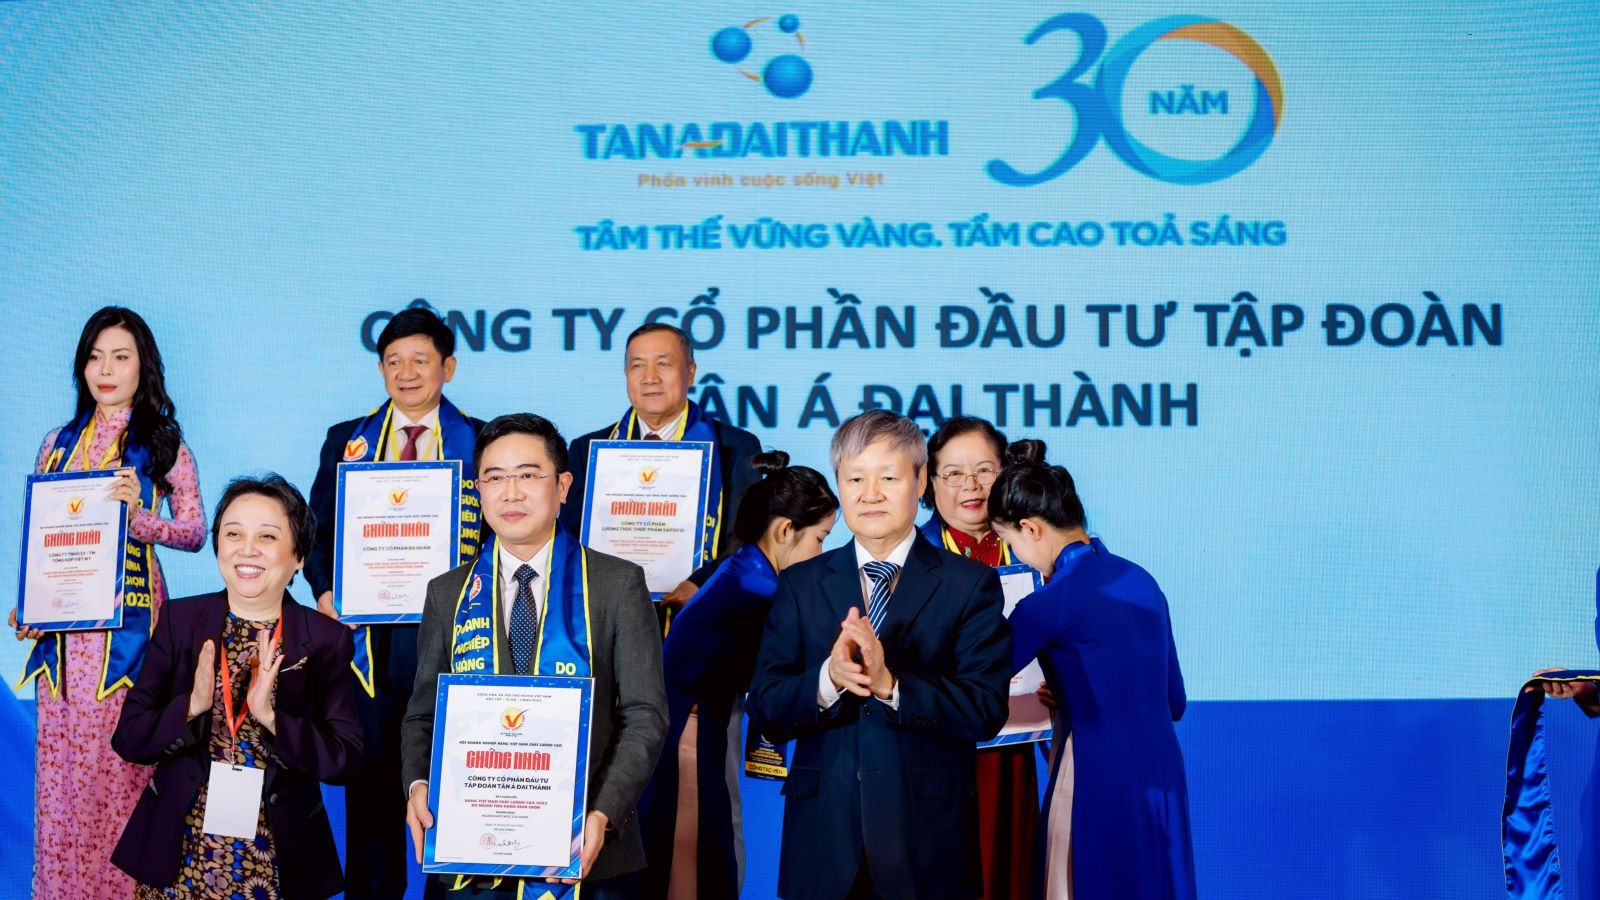 Tân Á Đại Thành: Hàng Việt Nam chất lượng cao đồng hành cùng nền kinh tế xanh - Ảnh 1.